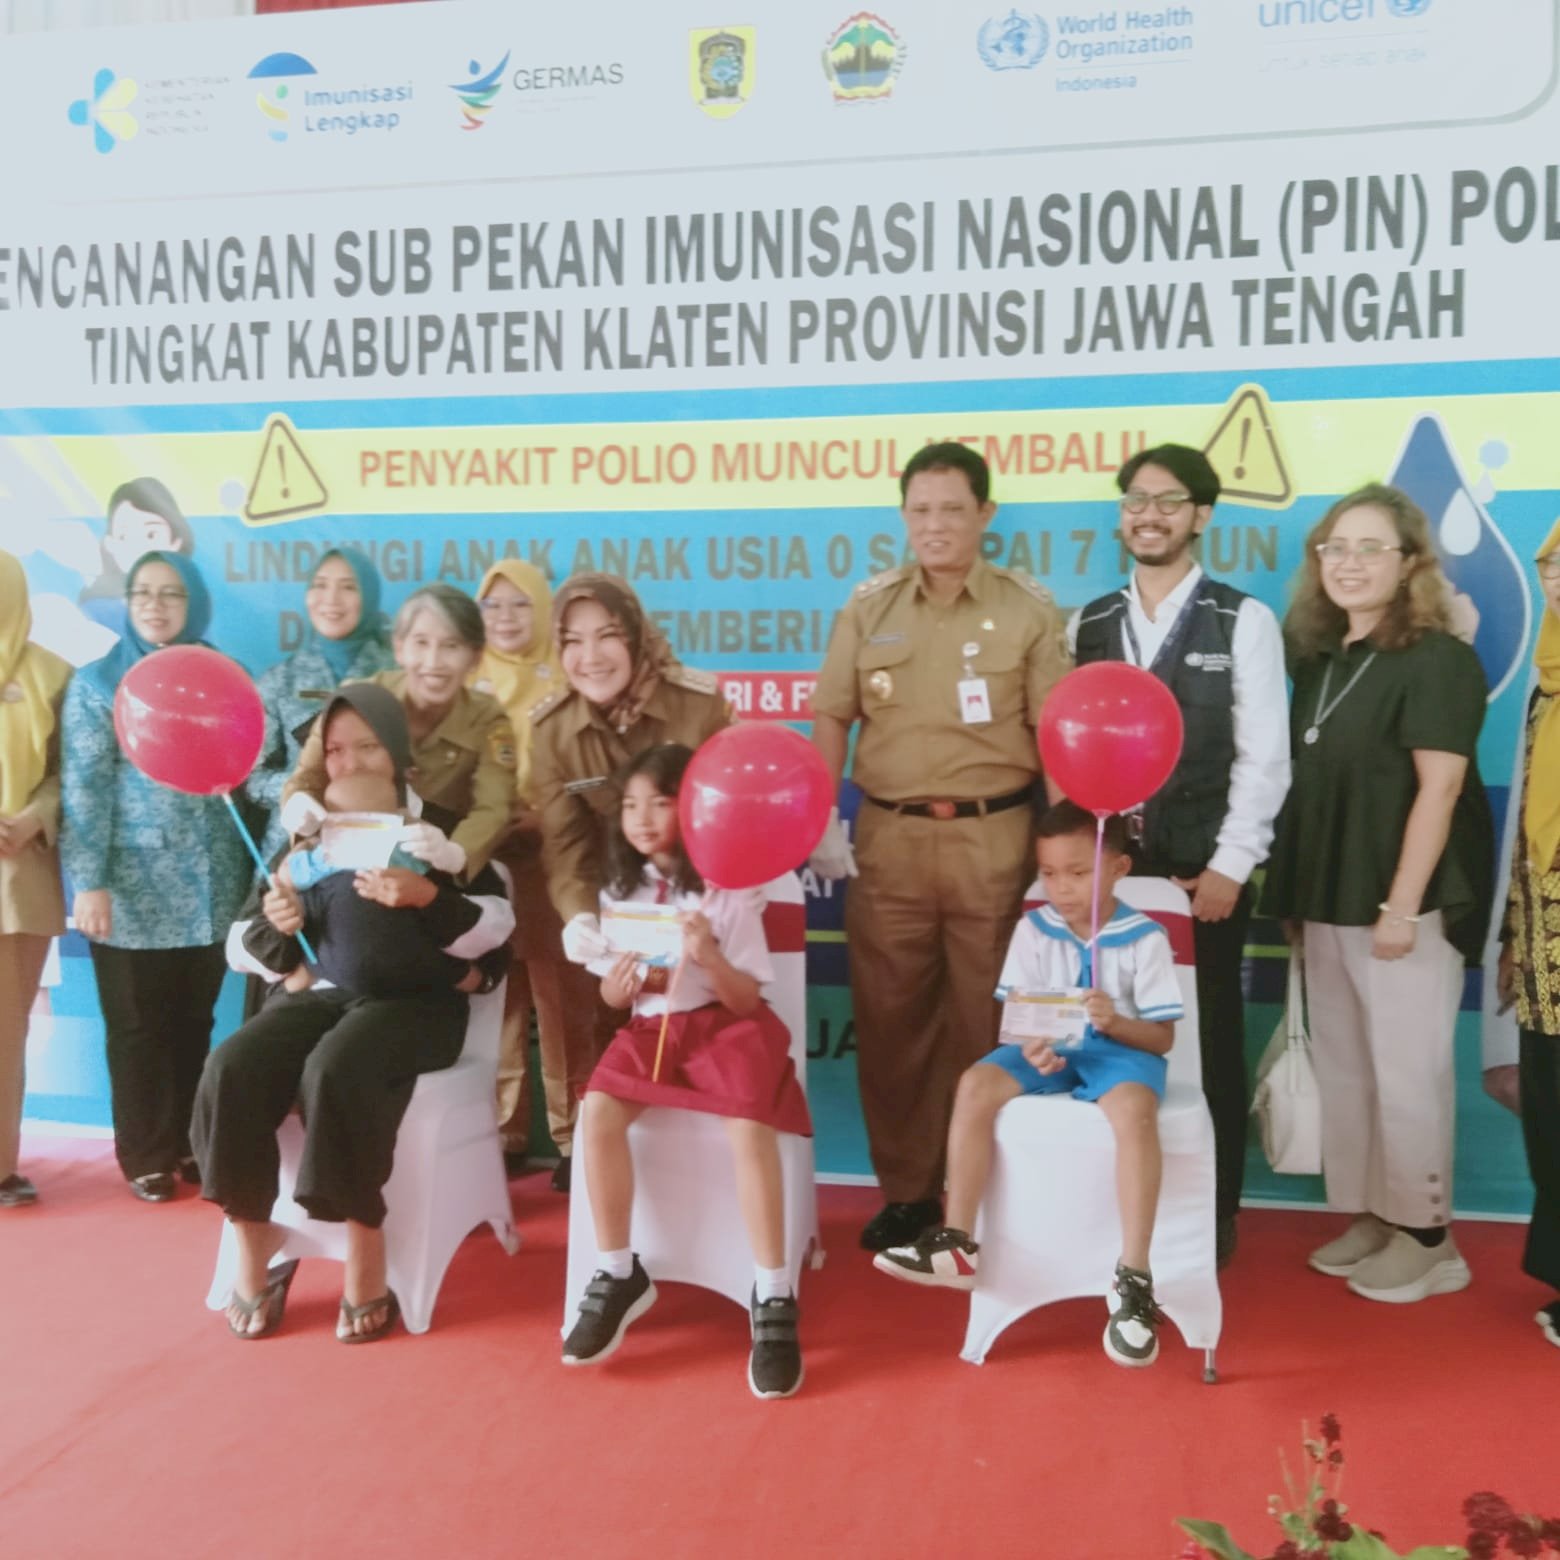 Pencanangan Sub Pekan Imunisasi Nasional Polio Kabupaten Klaten di Desa Tanjungsari Kec.Manisrenggo